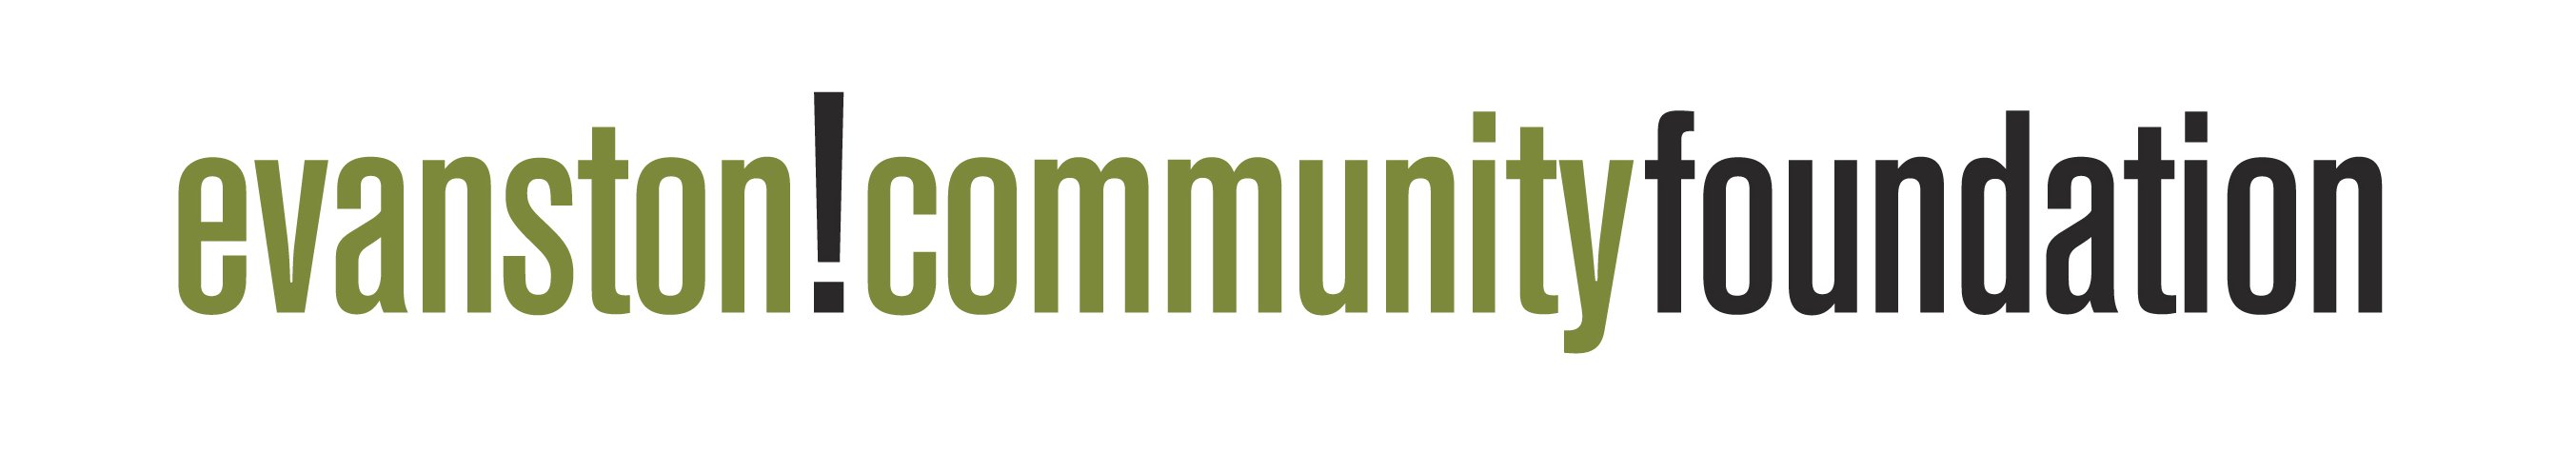 Evanston Community Foundation logo